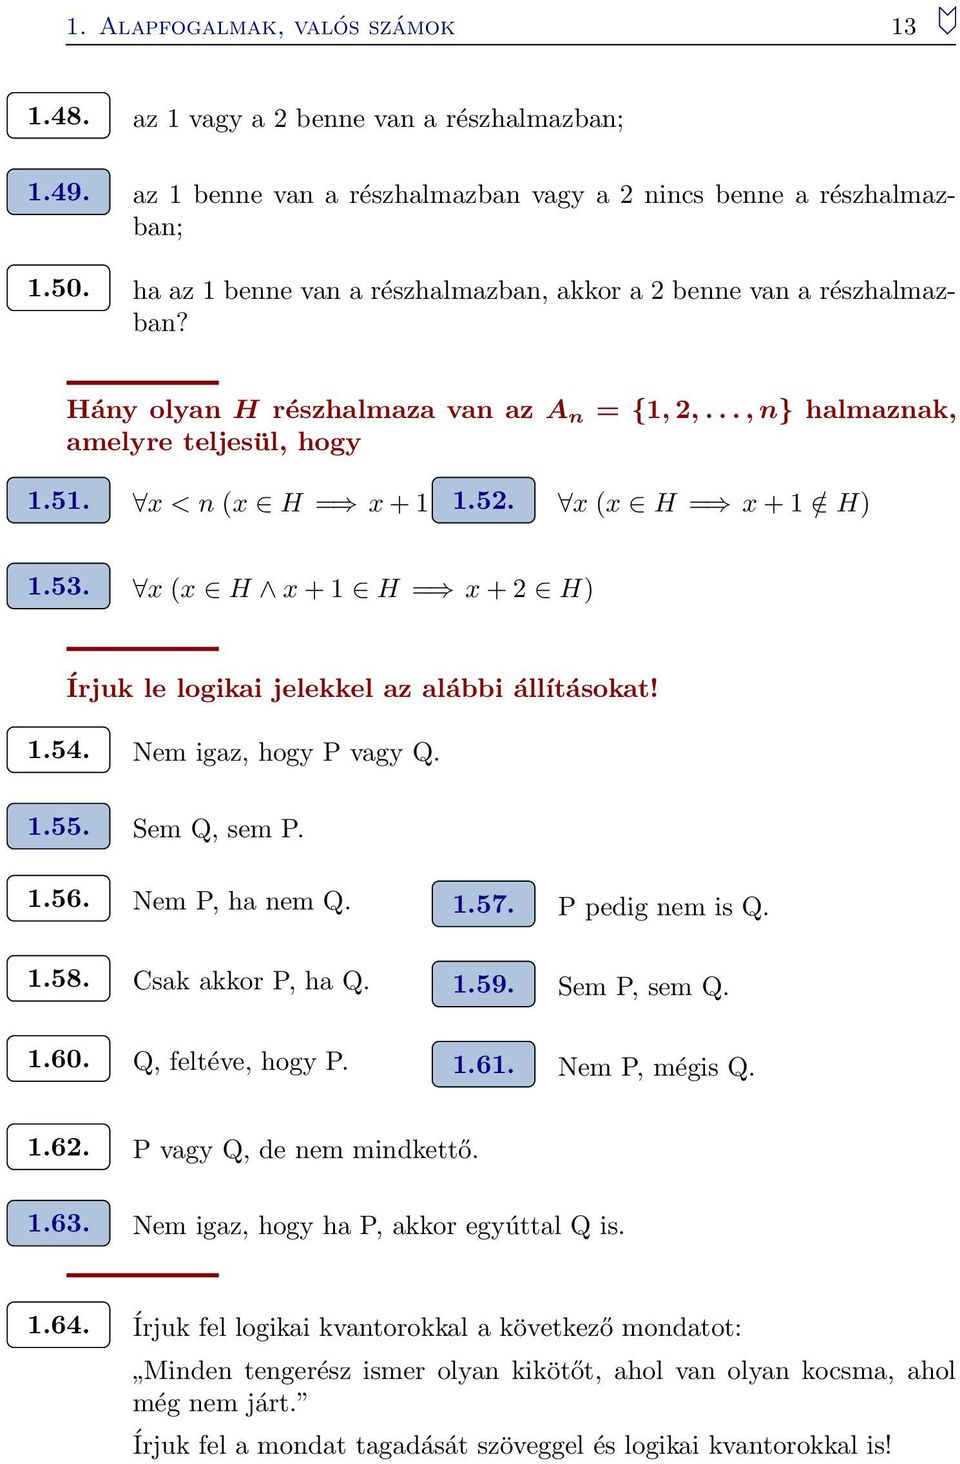 x (x H x + H = x + H) Írjuk le logikai jelekkel az alábbi állításokat!.54. Nem igaz, hogy P vagy Q..55. Sem Q, sem P..56. Nem P, ha nem Q..57. P pedig nem is Q..58. Csak akkor P, ha Q..59.